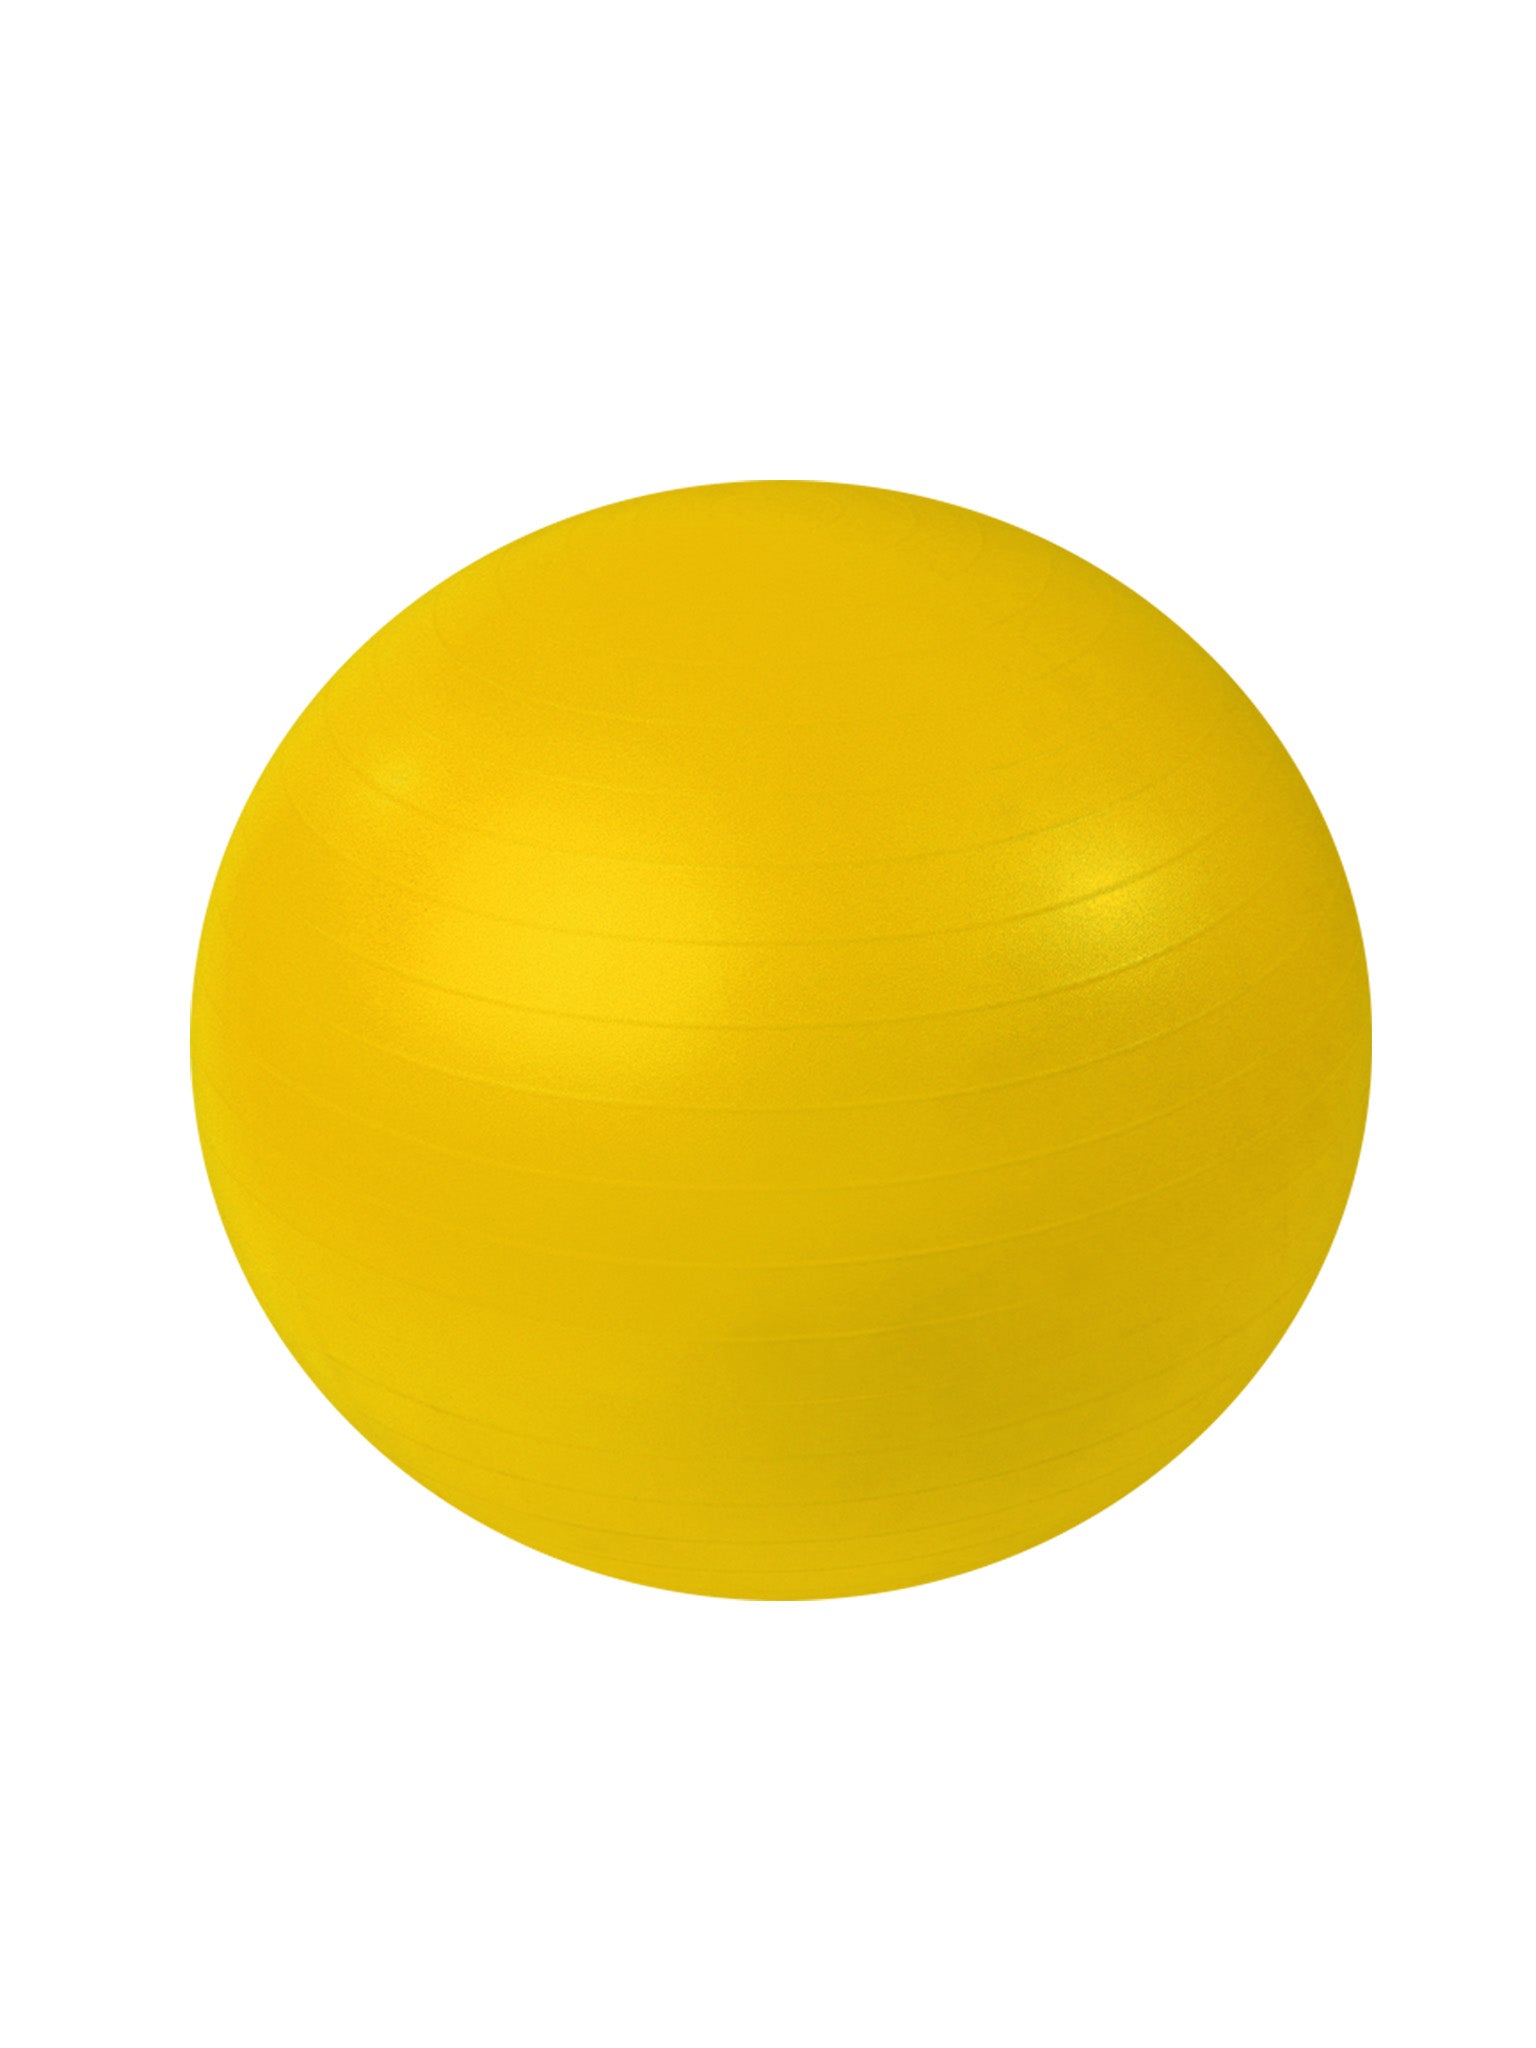 Ballons De Stabilité 360 Athletics